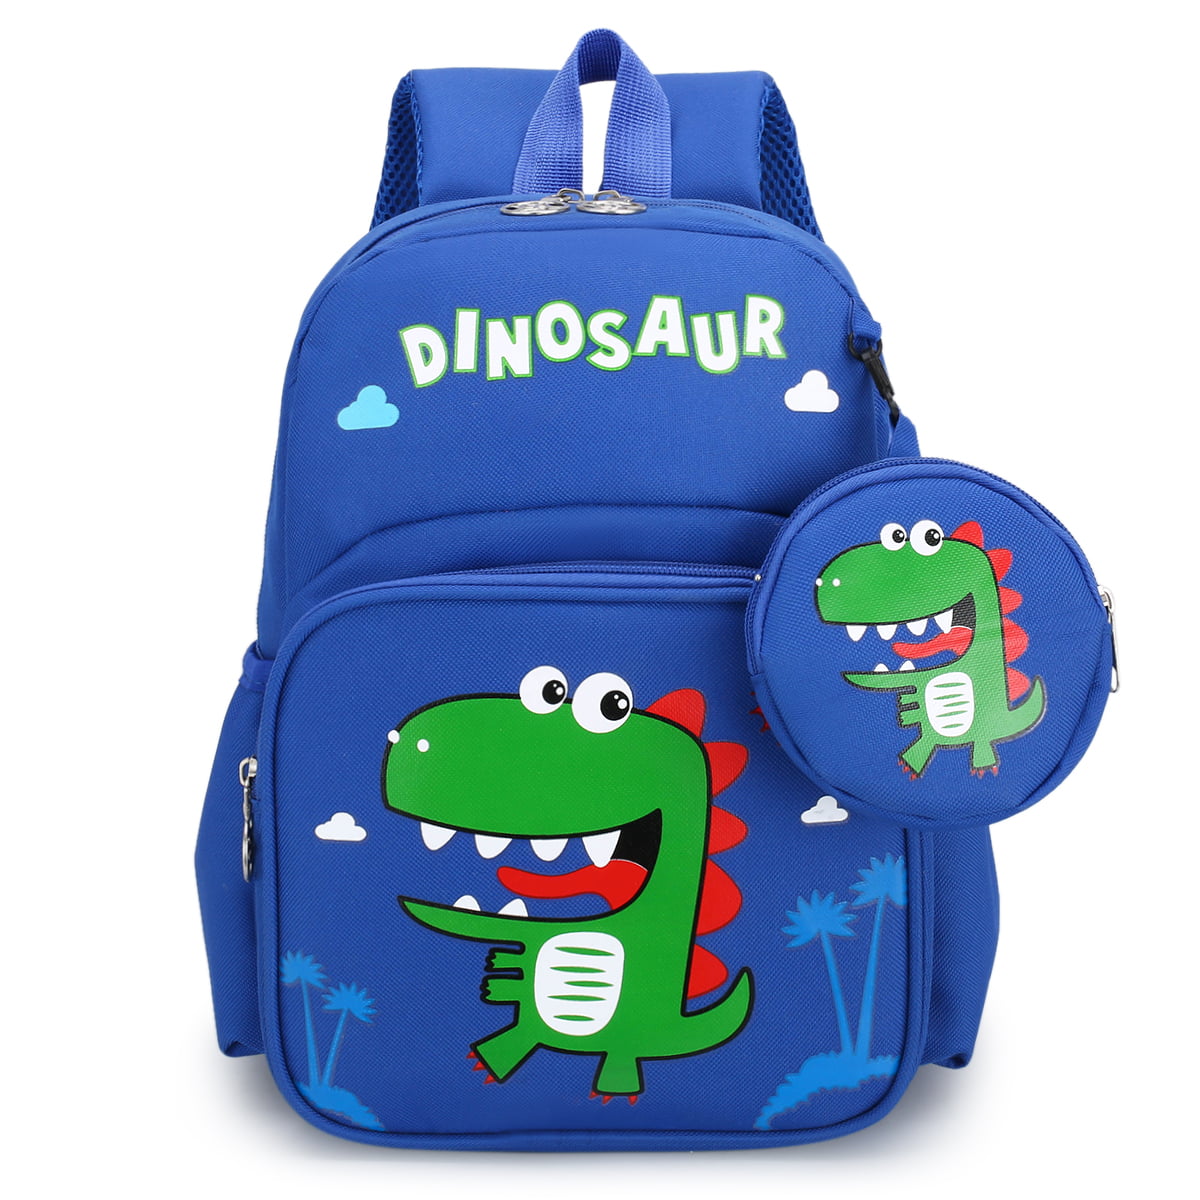 Spiderman school bag,For Boys Waterproof Backpack,3D 3-6 Year Old School Bags 